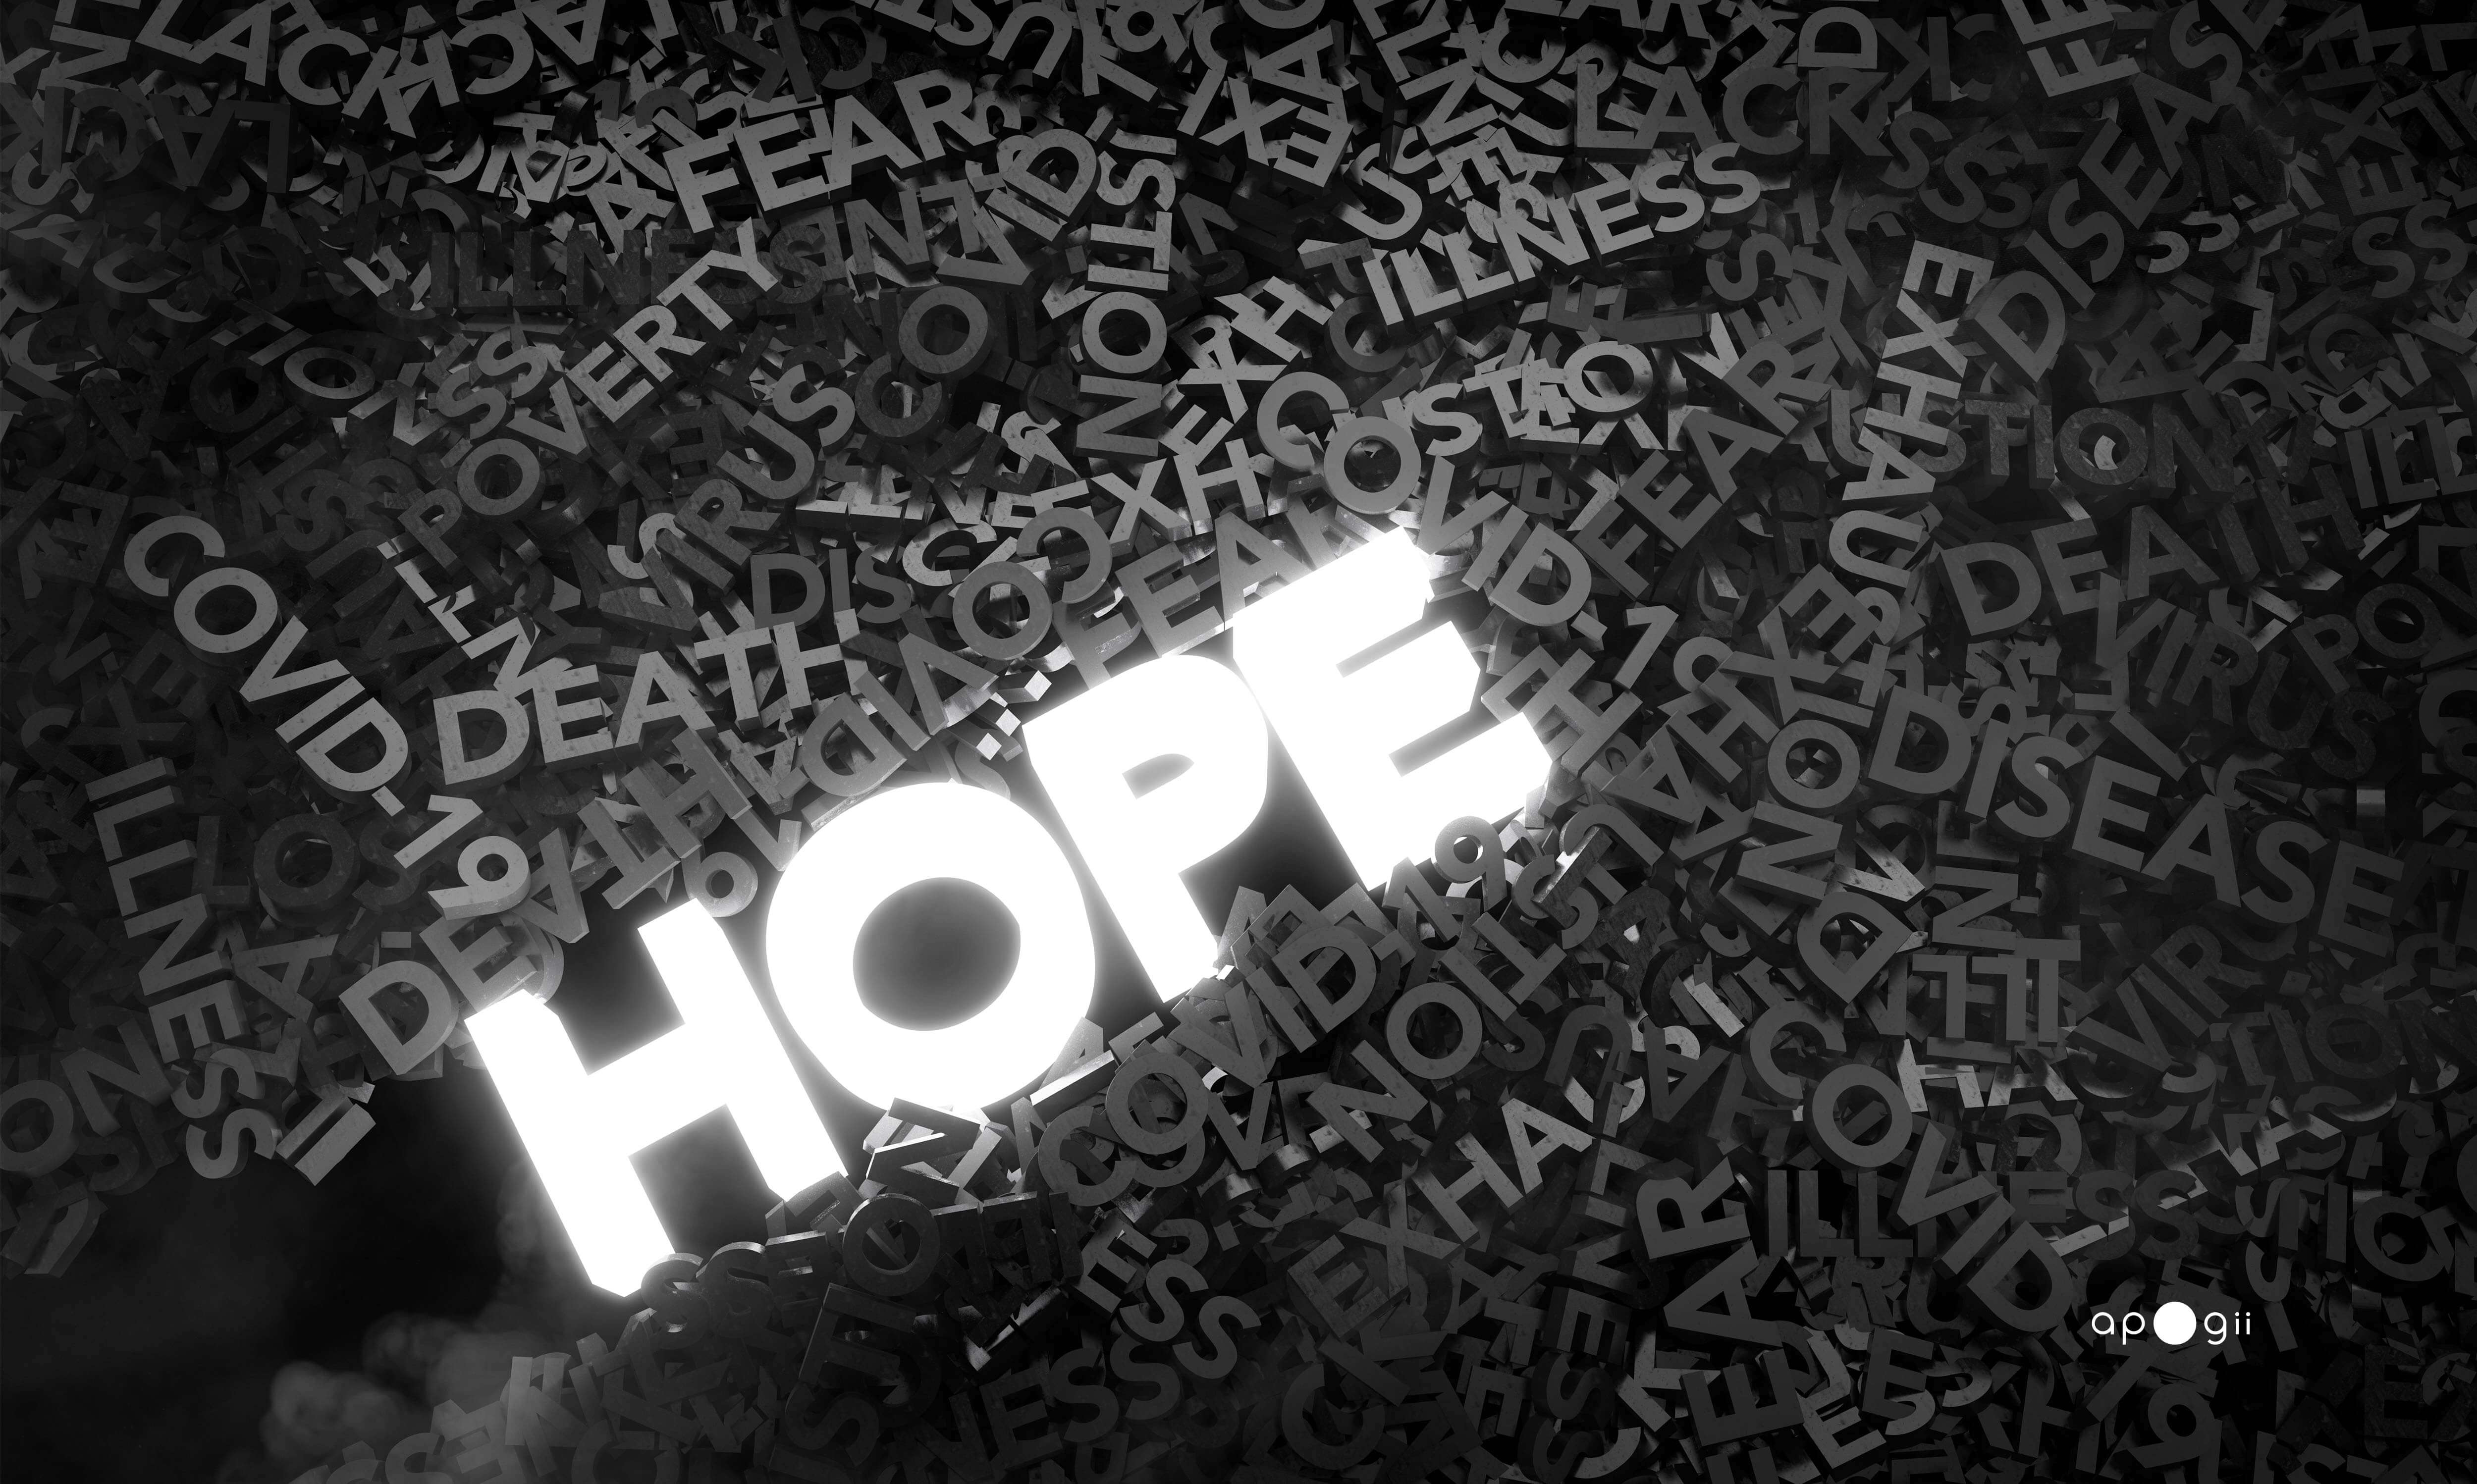 Hope breaks through